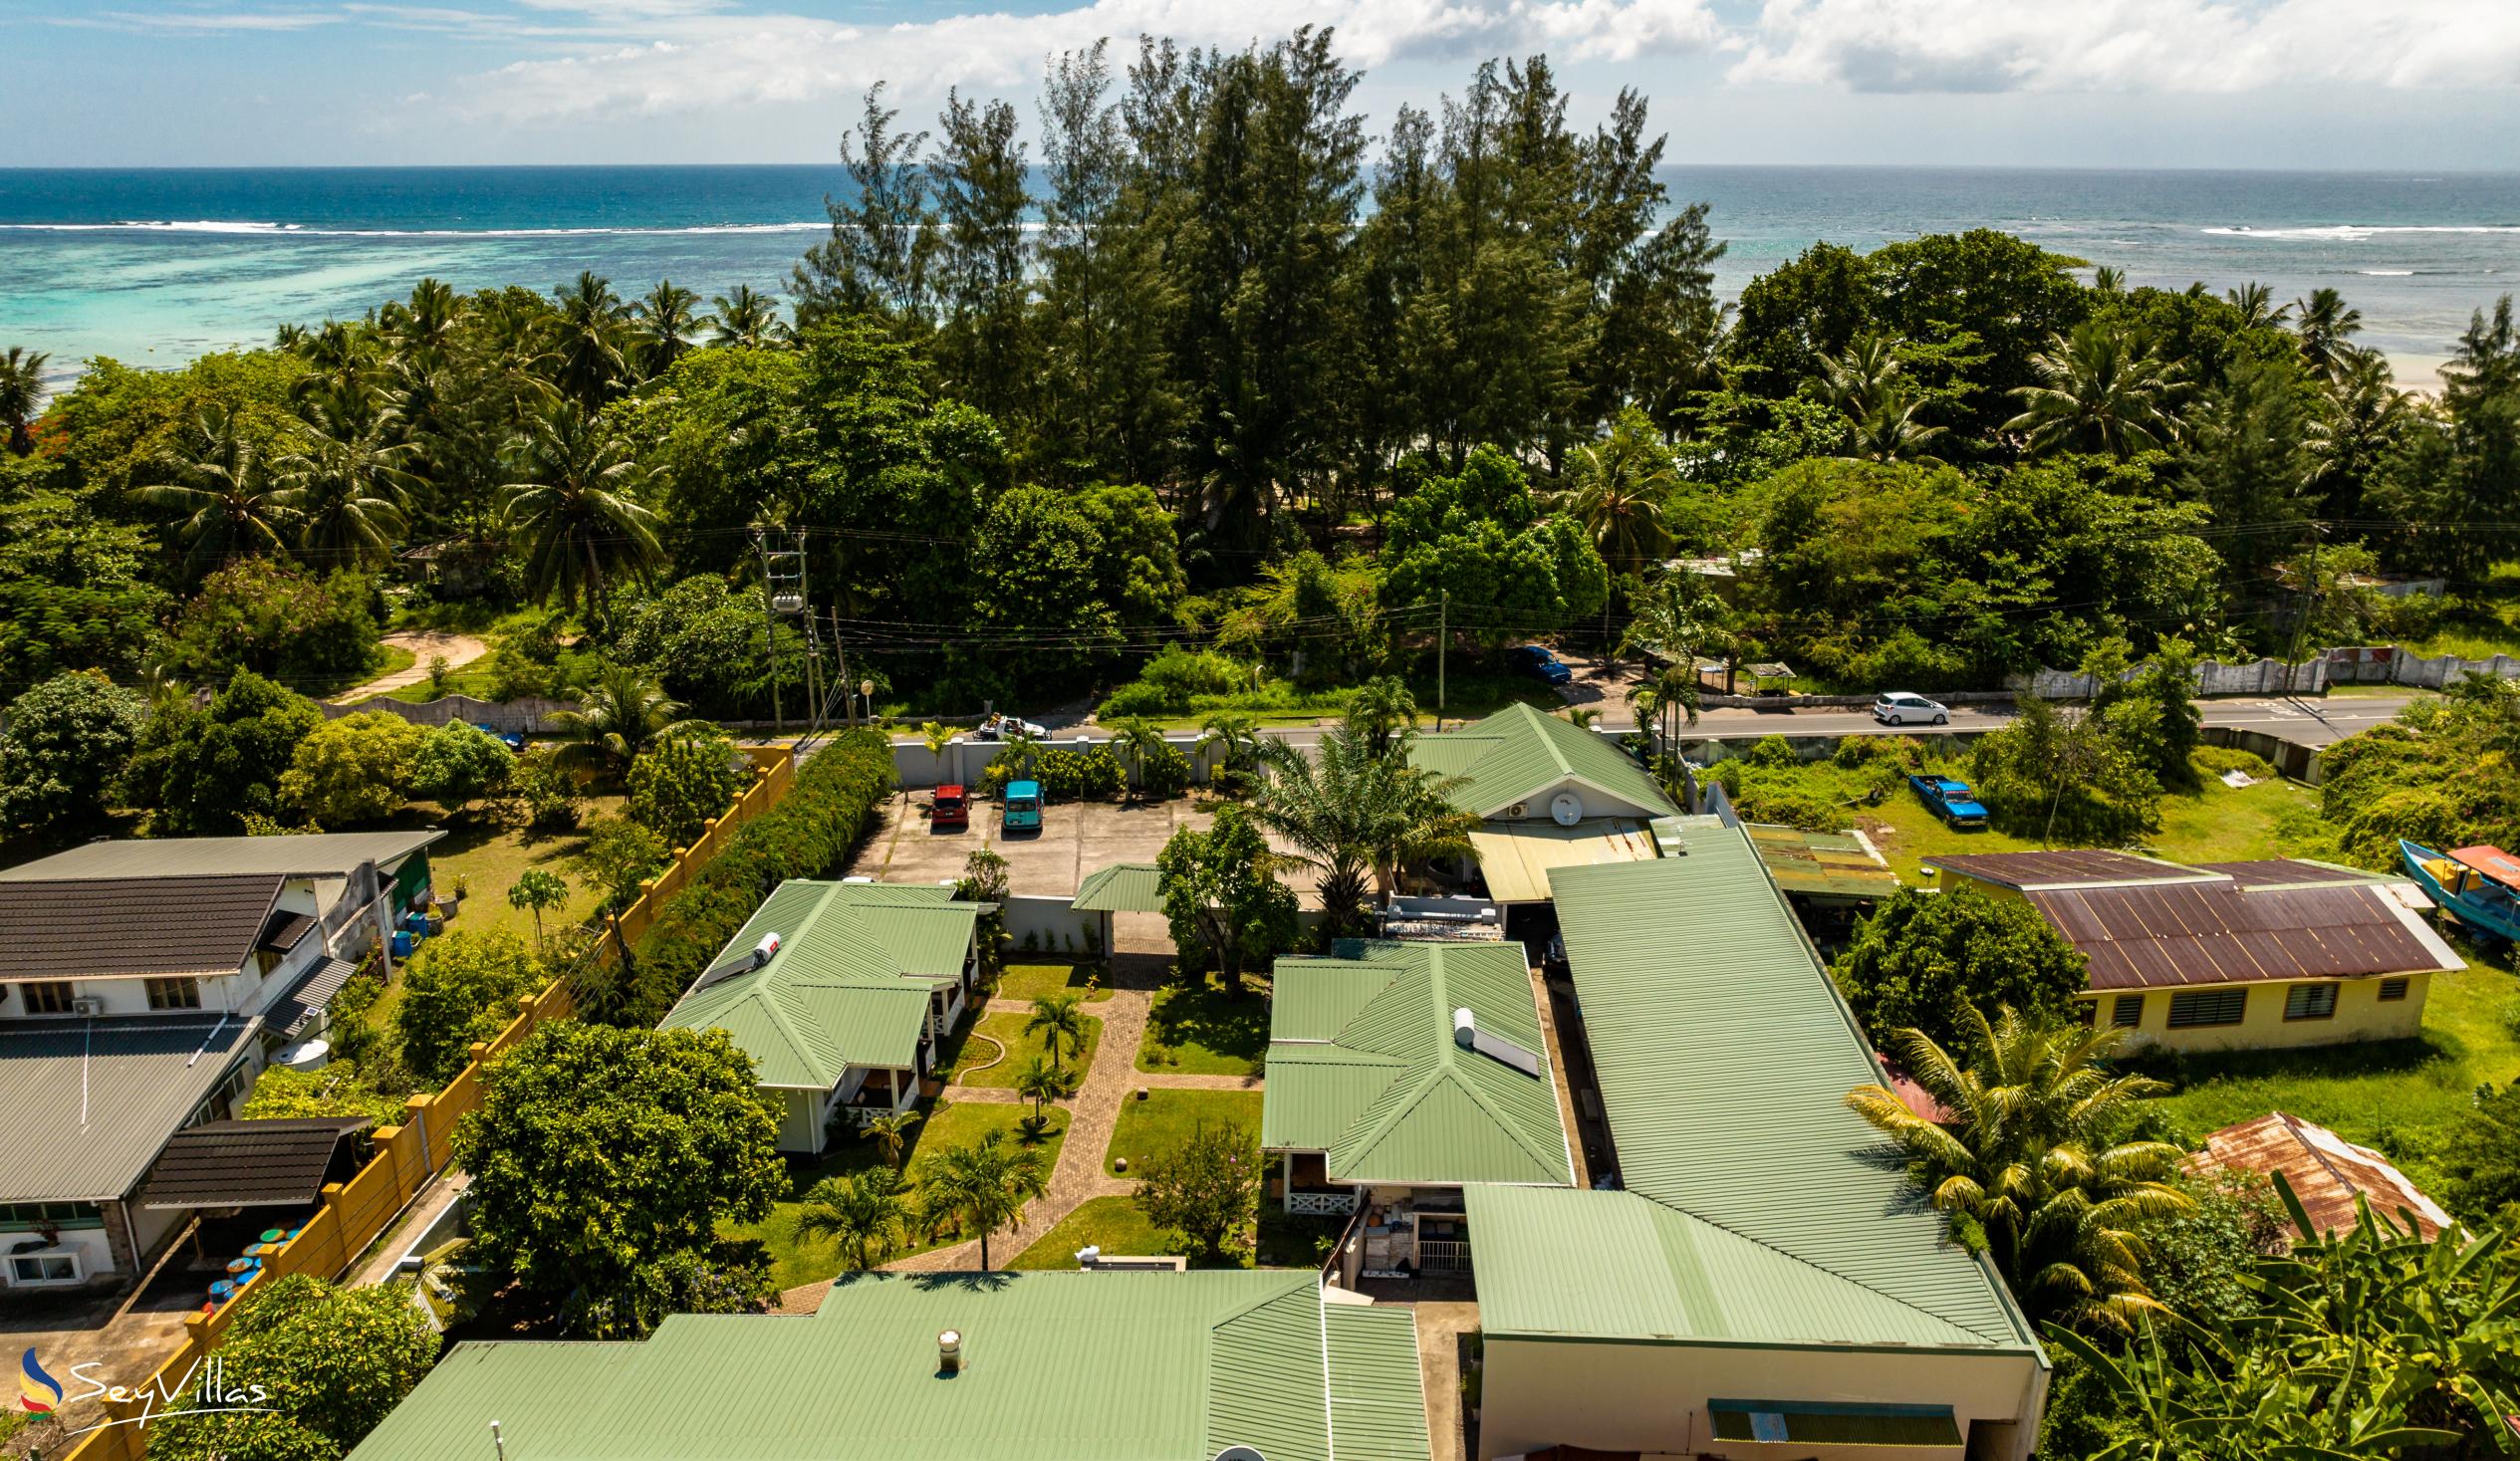 Photo 4: Hotel La Roussette - Outdoor area - Mahé (Seychelles)